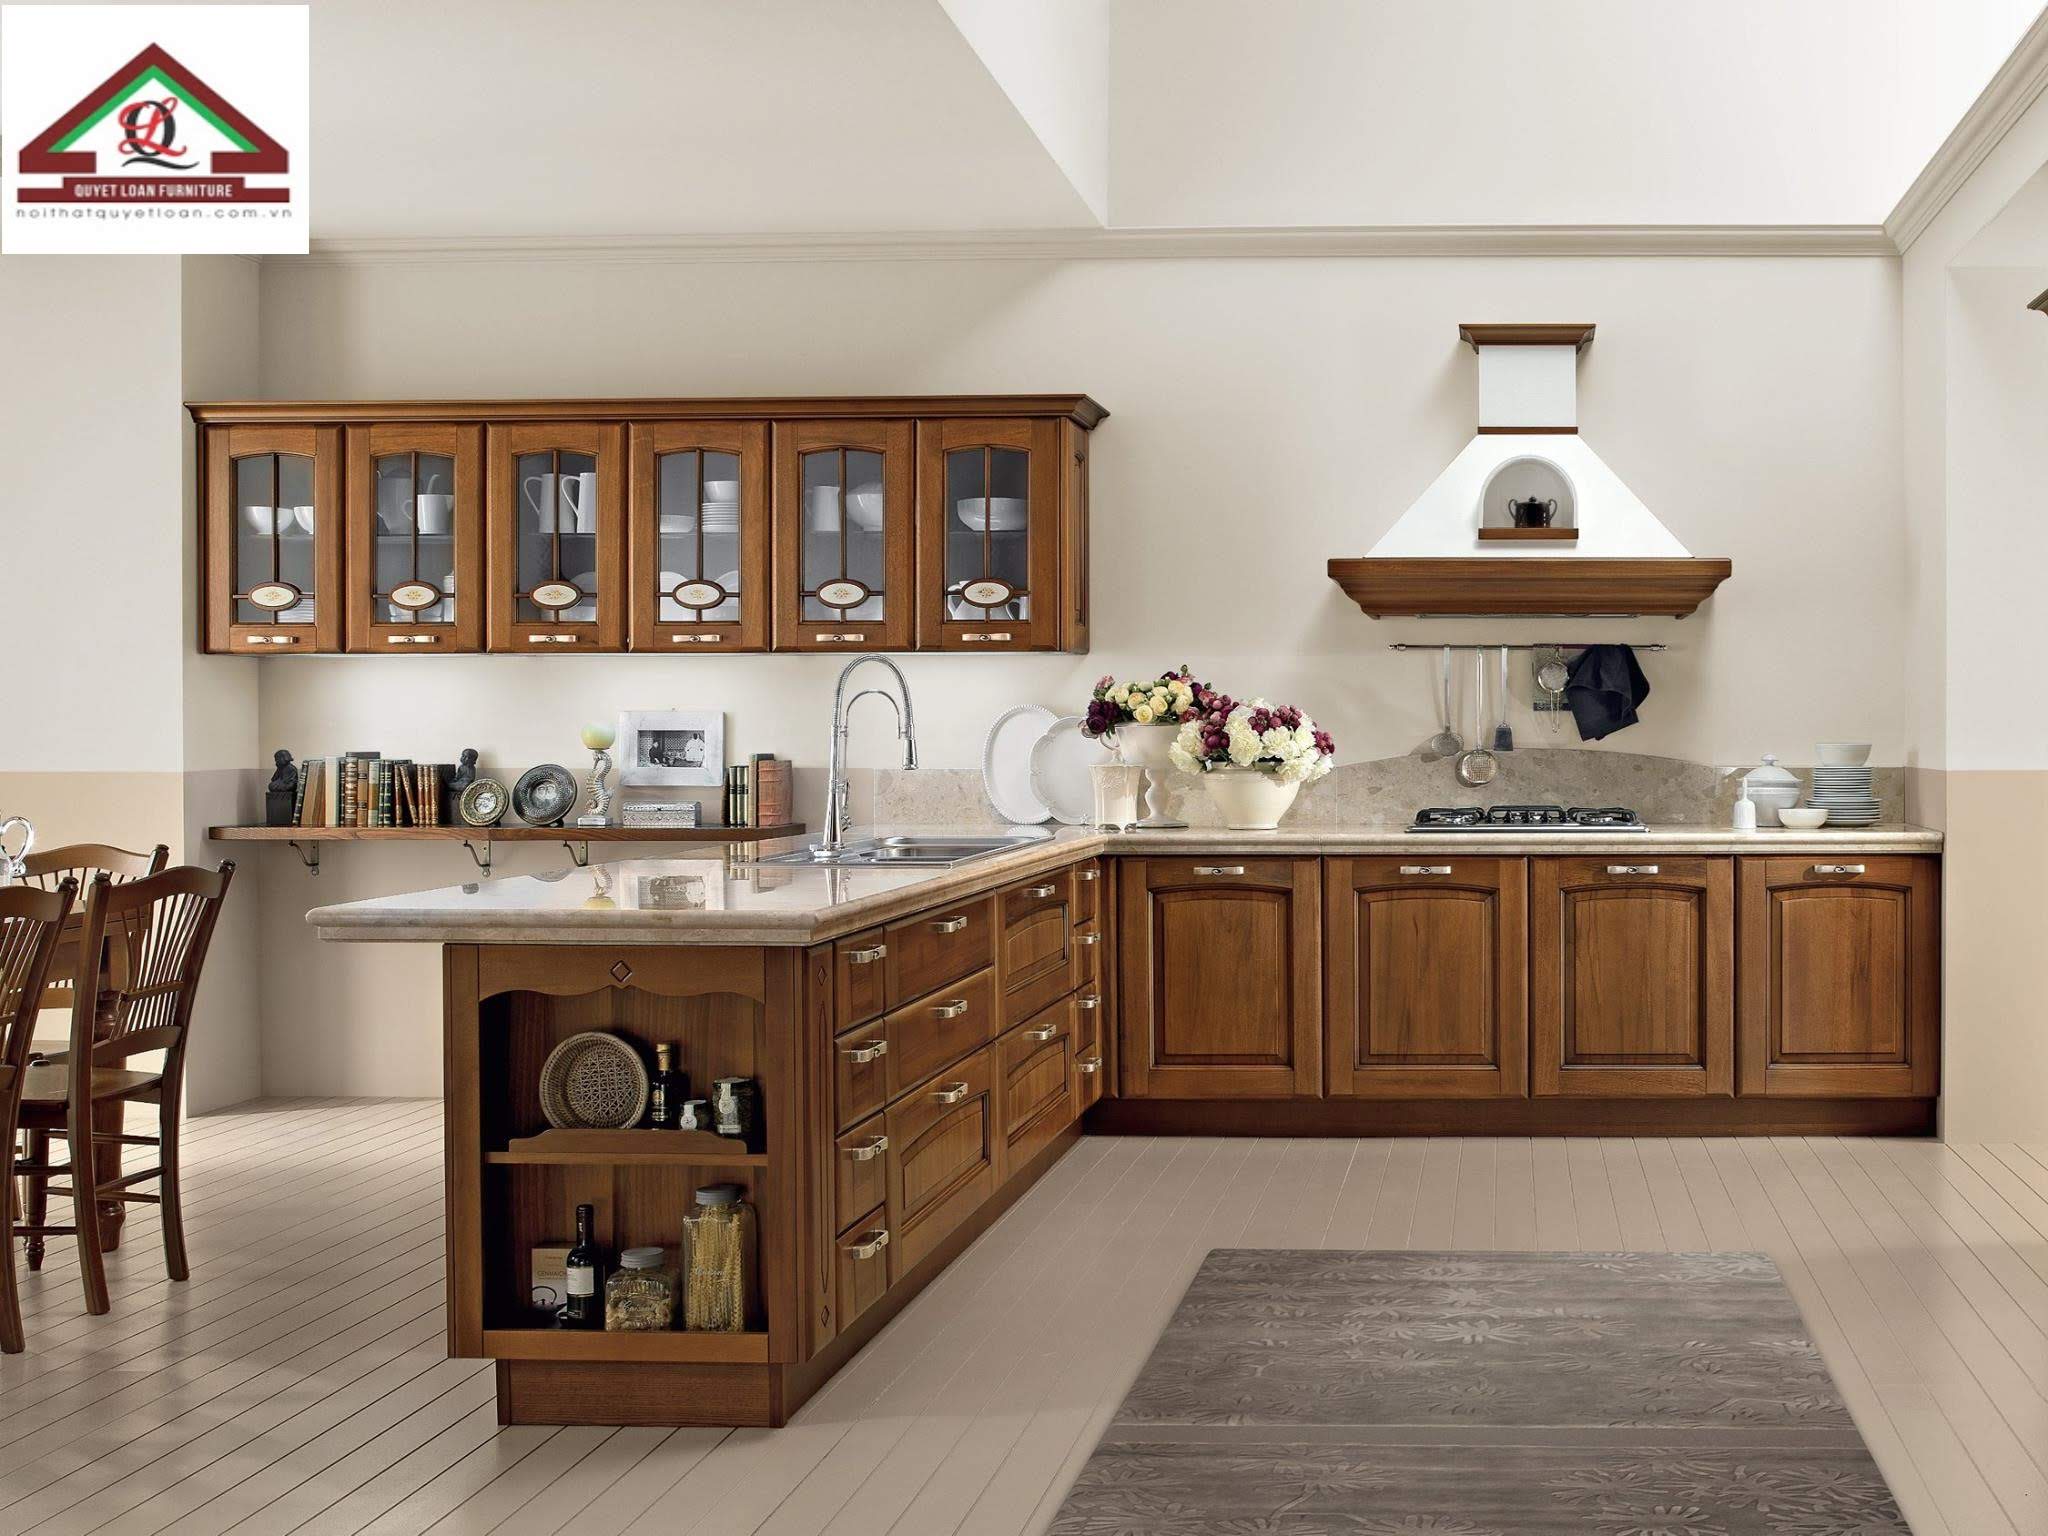 Tủ bếp gỗ tự nhiên cao cấp luôn là sự lựa chọn hoàn hảo cho các căn bếp hiện đại. Với thiết kế đơn giản nhưng sang trọng, tủ bếp có thể tạo ra một không gian nấu ăn thoải mái, hiện đại và đẳng cấp. Vật liệu cứng cáp, bền bỉ và độc đáo giúp tủ bếp trở nên đẹp mắt hơn theo thời gian.